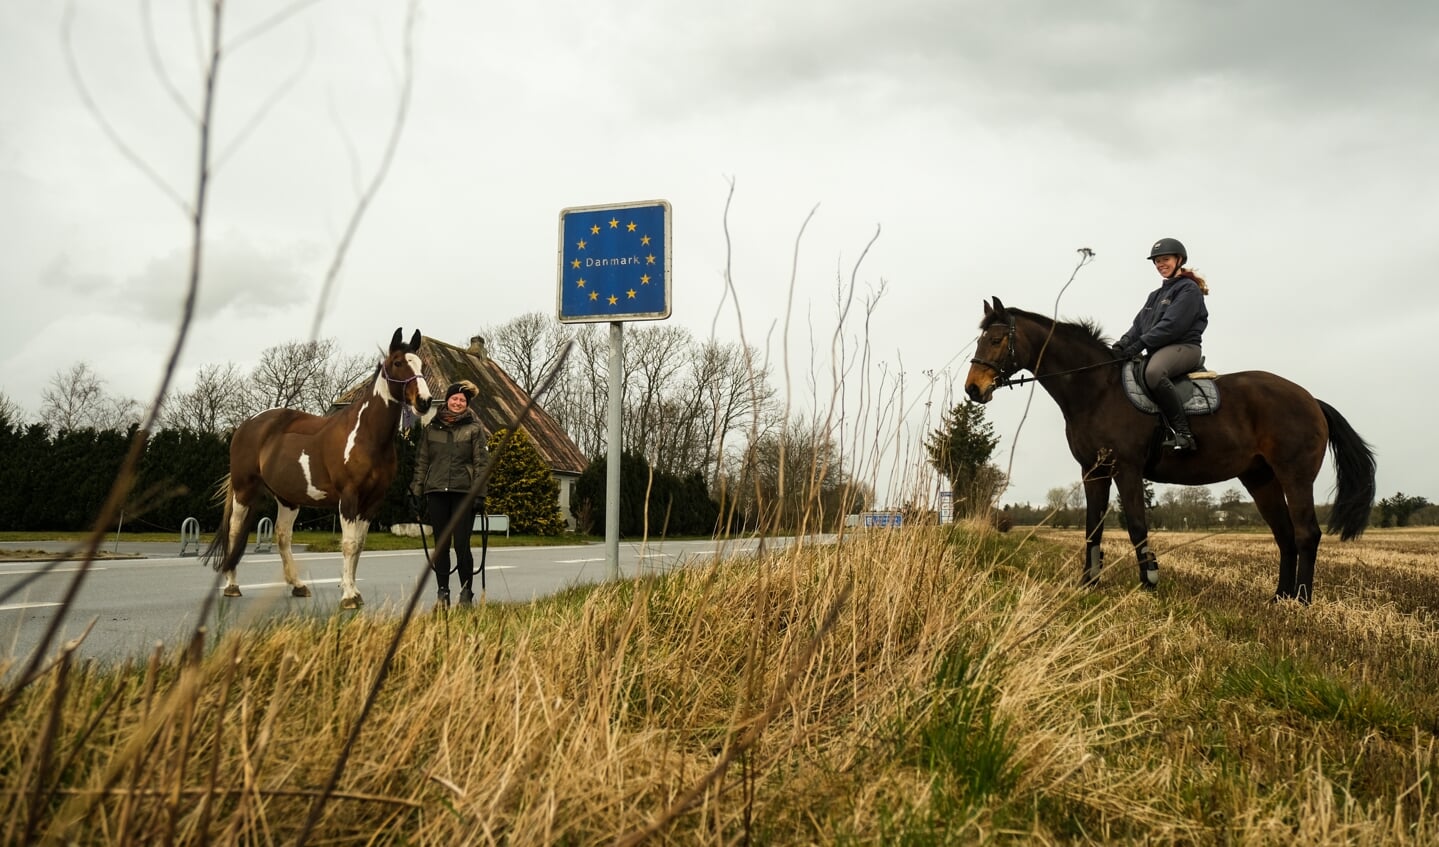 Det er ikke mindst Pebersmark/Rens grænseovergang, der benyttes af hesteejere, der vil besøge klubberne i Ladelund og i Bylderup Bov. Den trafik har nye EU-regler sat stop for. Foto: